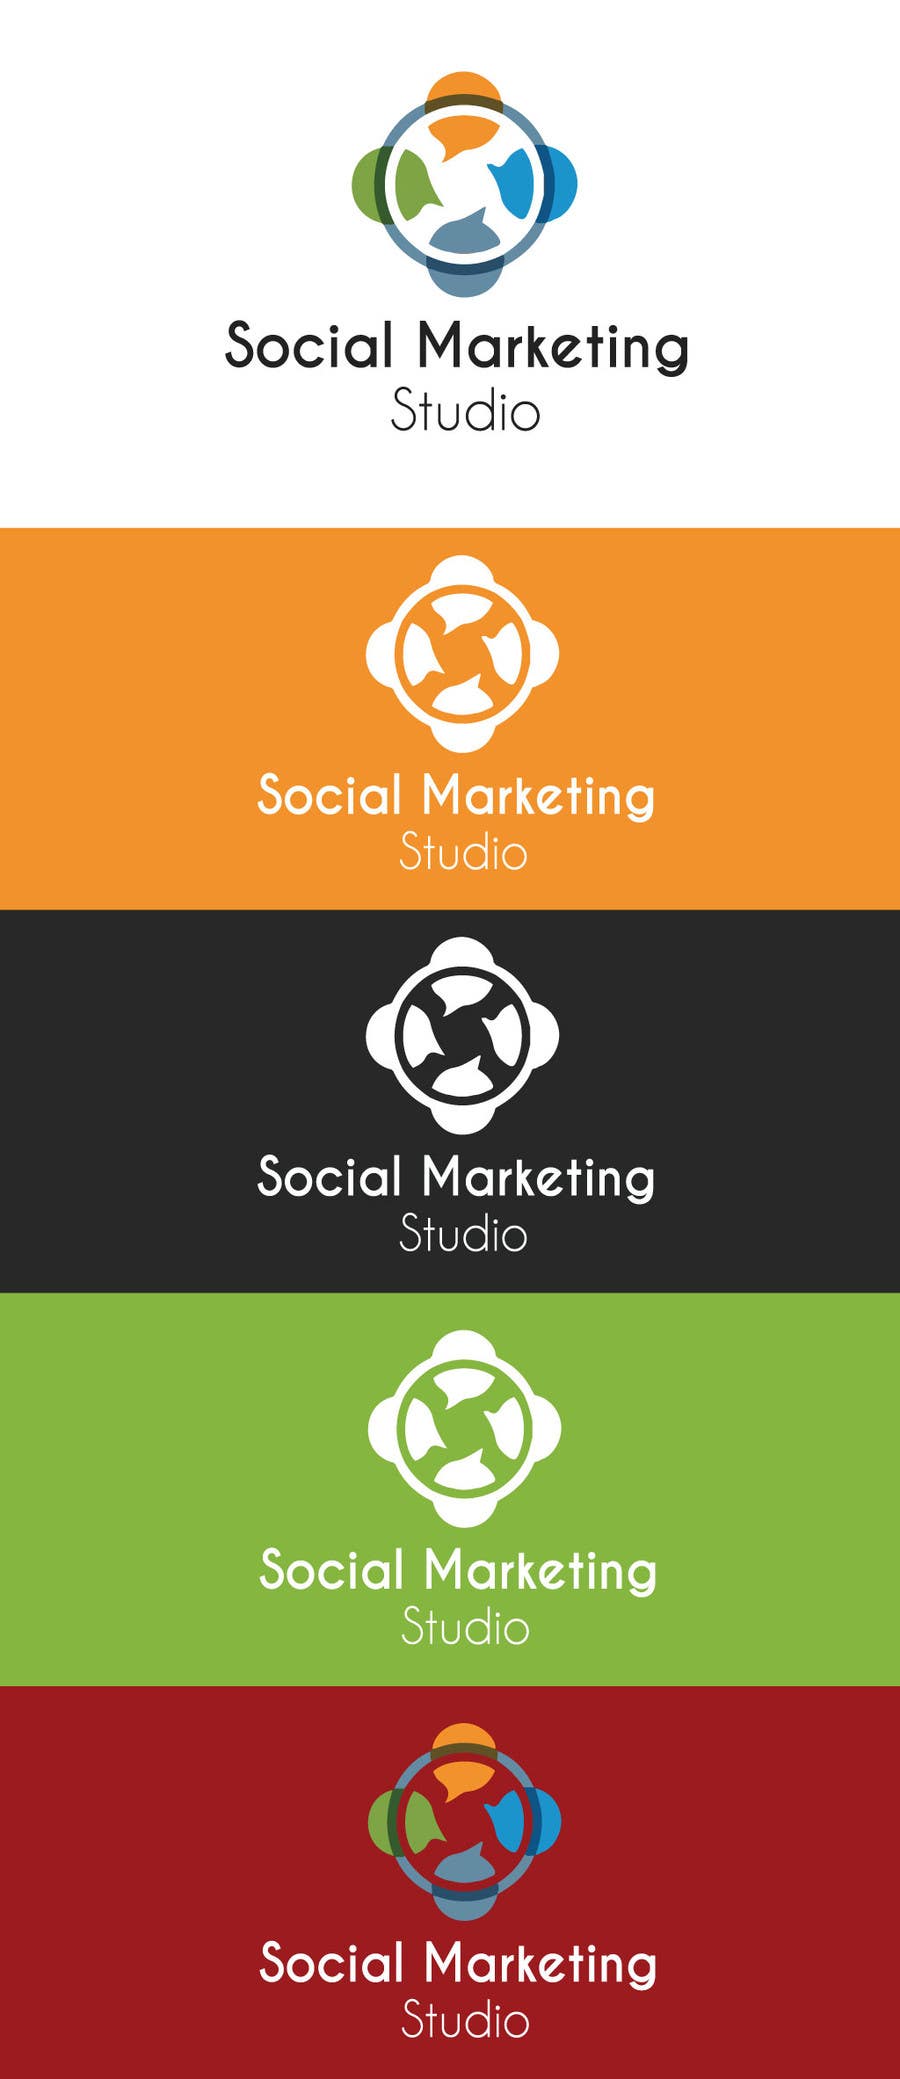 Penyertaan Peraduan #1 untuk                                                 Design a Logo for a social media company
                                            